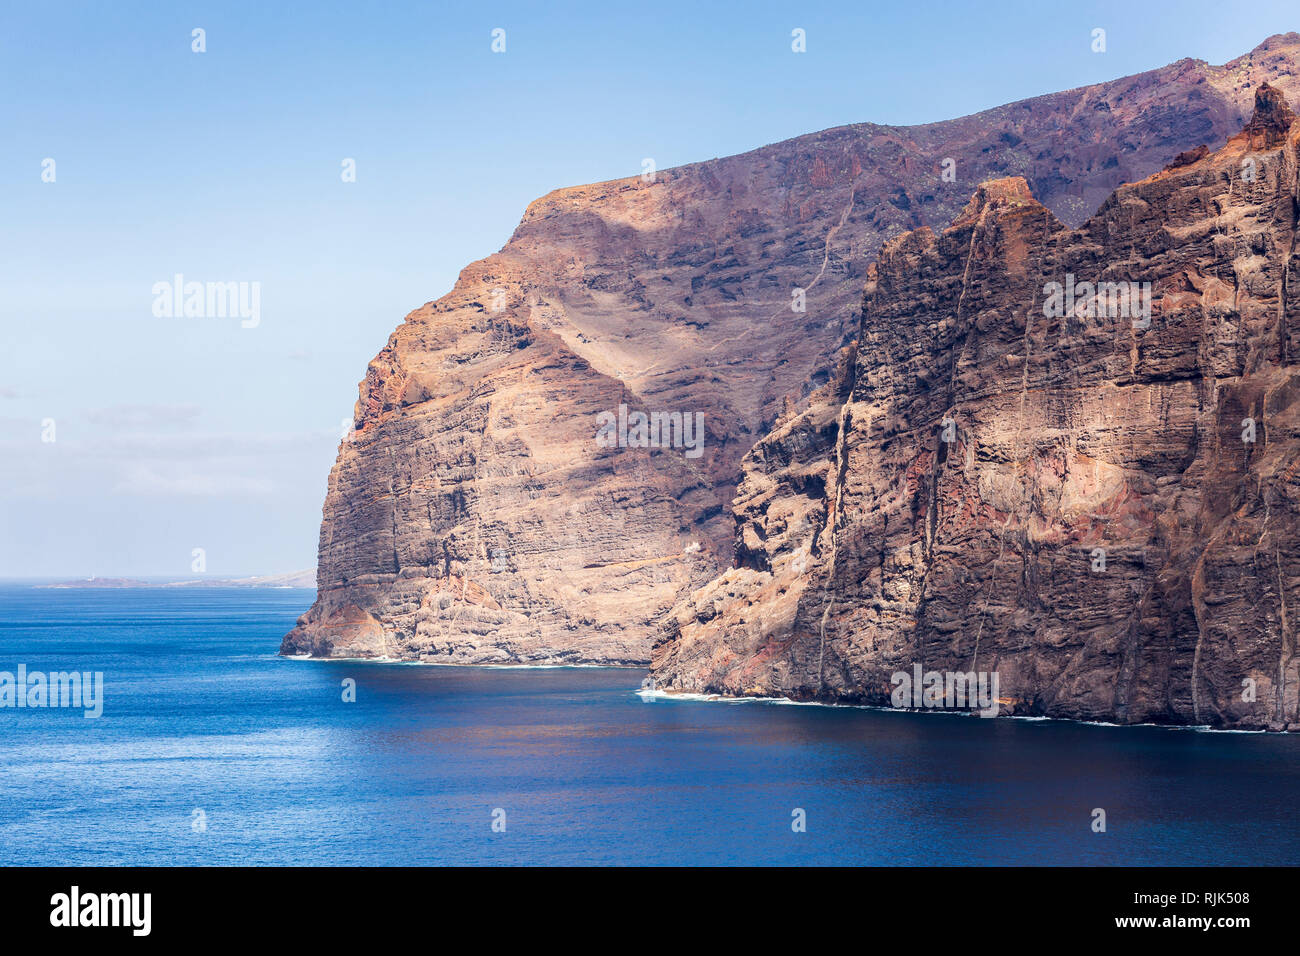 Schiere seeklippen von Los Gigantes mit Naht schroffen Felswände der ruhigen blauen Atlantik an der Westküste von Teneriffa, Kanarische Inseln, Spanien erfüllen Stockfoto